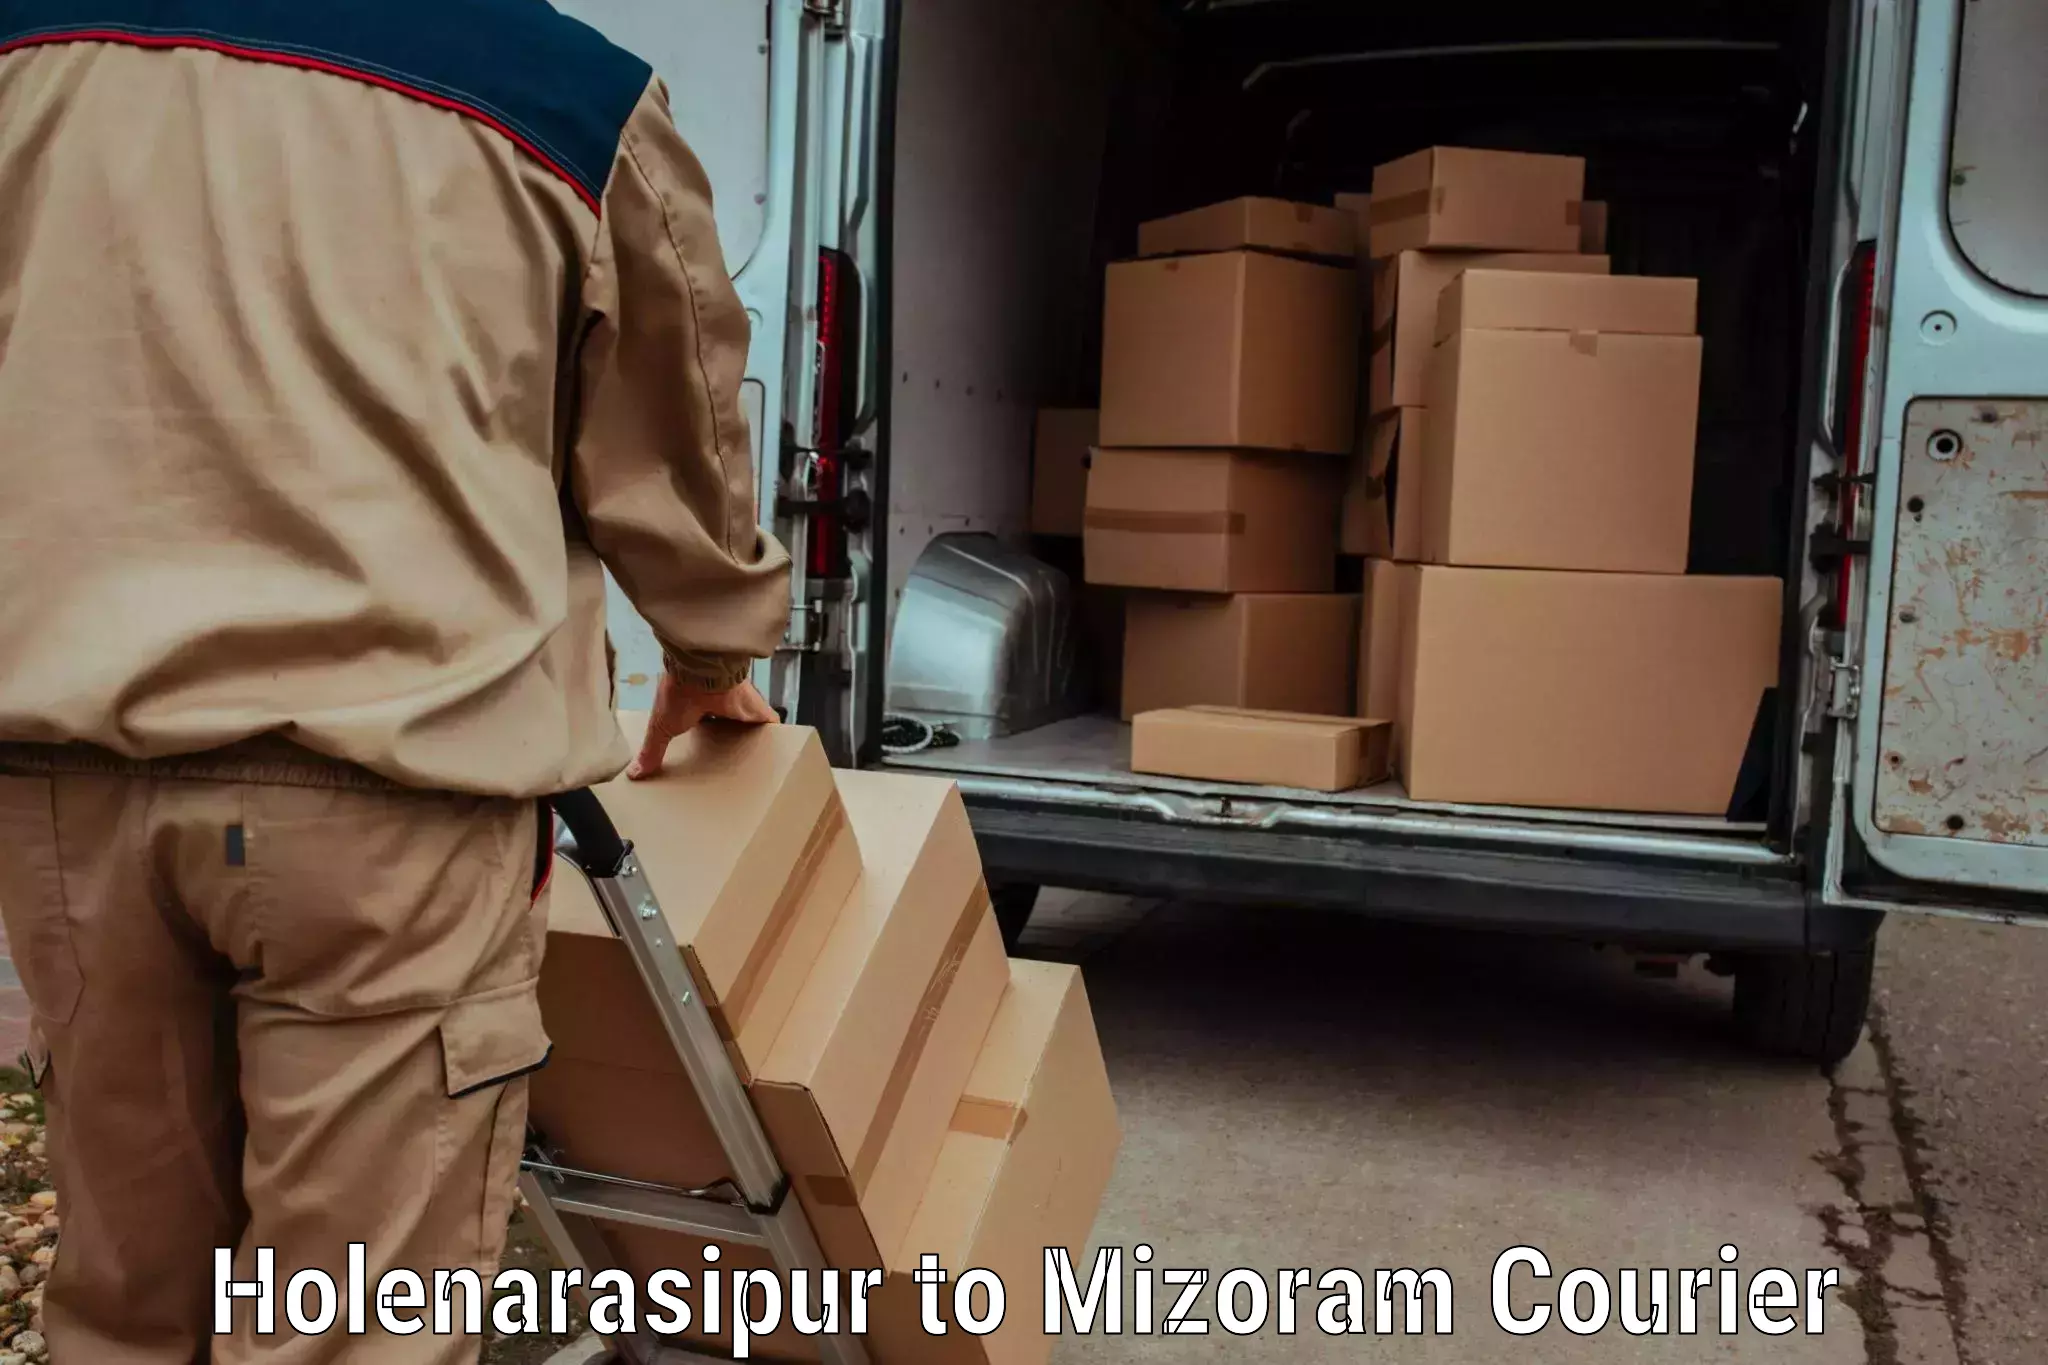 Luggage shipment specialists Holenarasipur to Mizoram